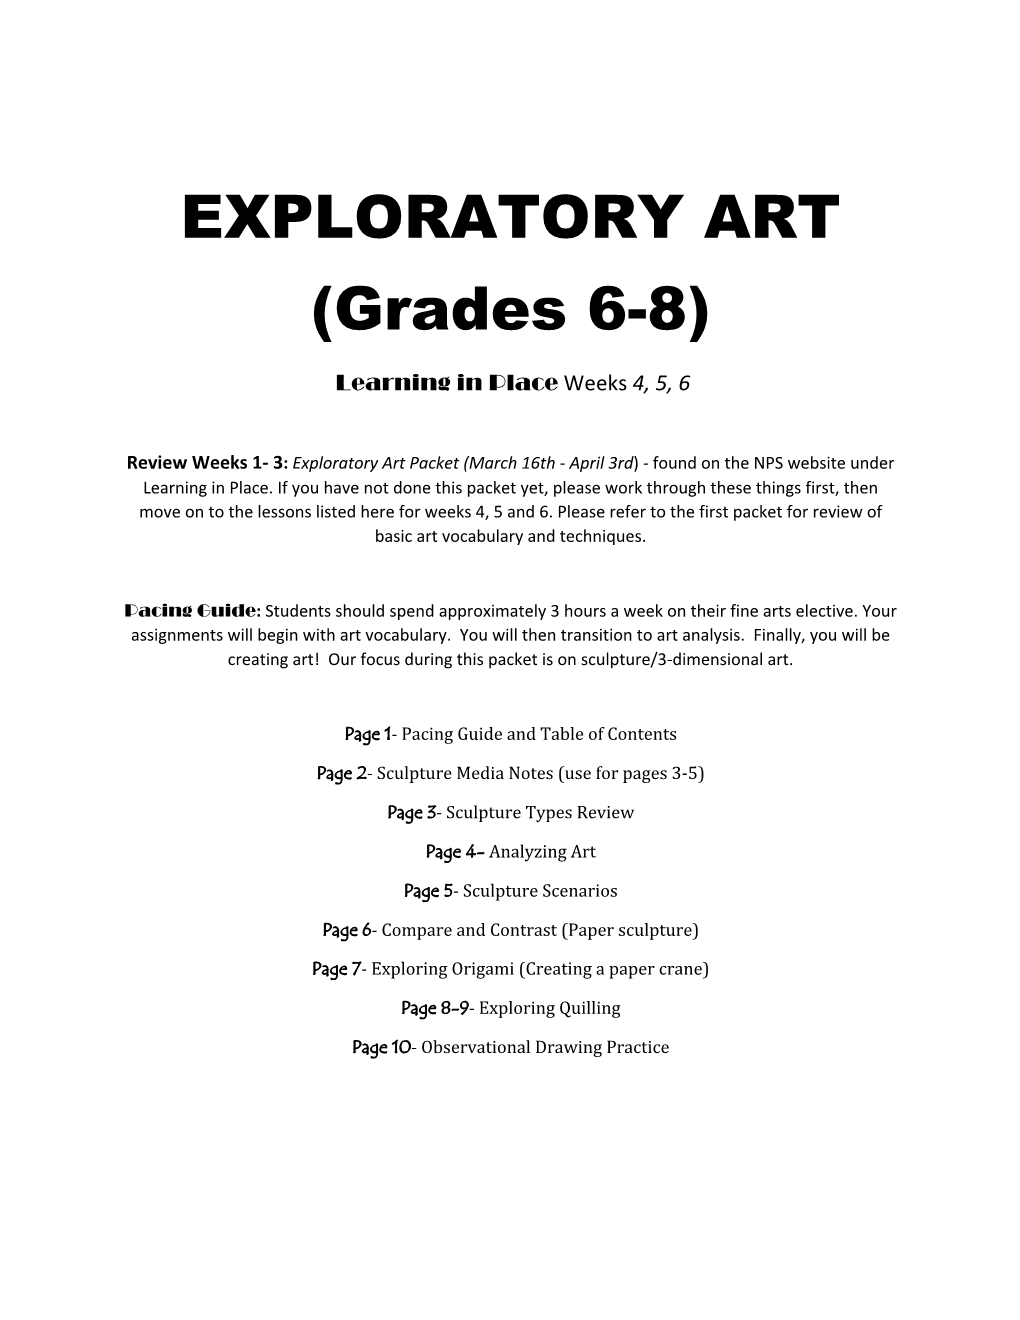 EXPLORATORY ART (Grades 6-8)